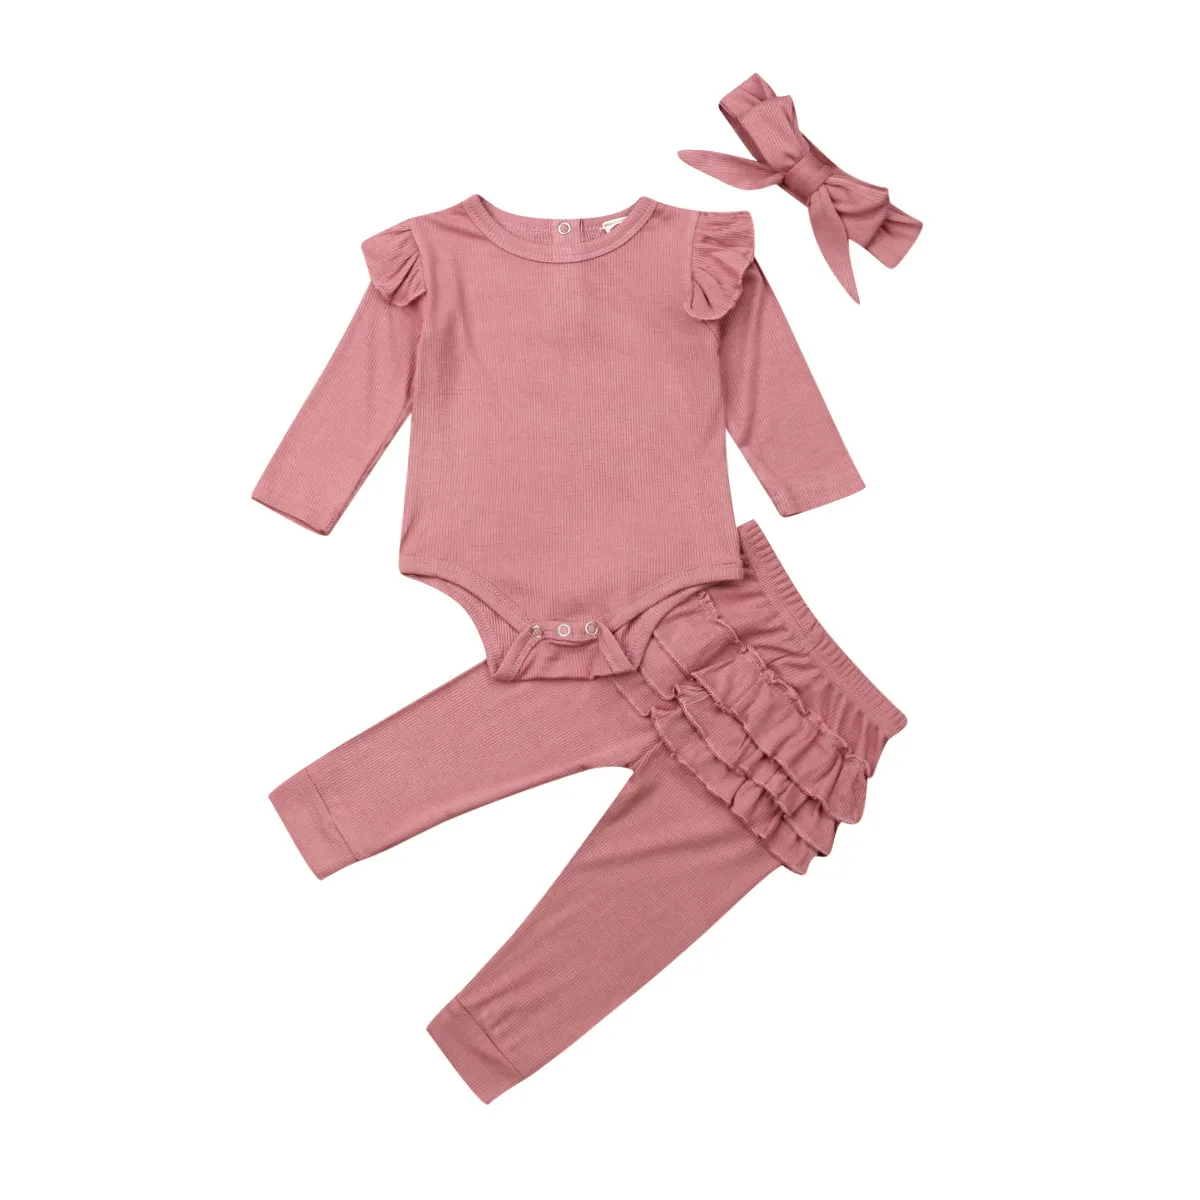 Одежда для малышей г. Осенняя одежда для новорожденных девочек Трикотажный боди Топ, штаны с оборками повязка на голову комплект из 3 предметов - Цвет: Розовый